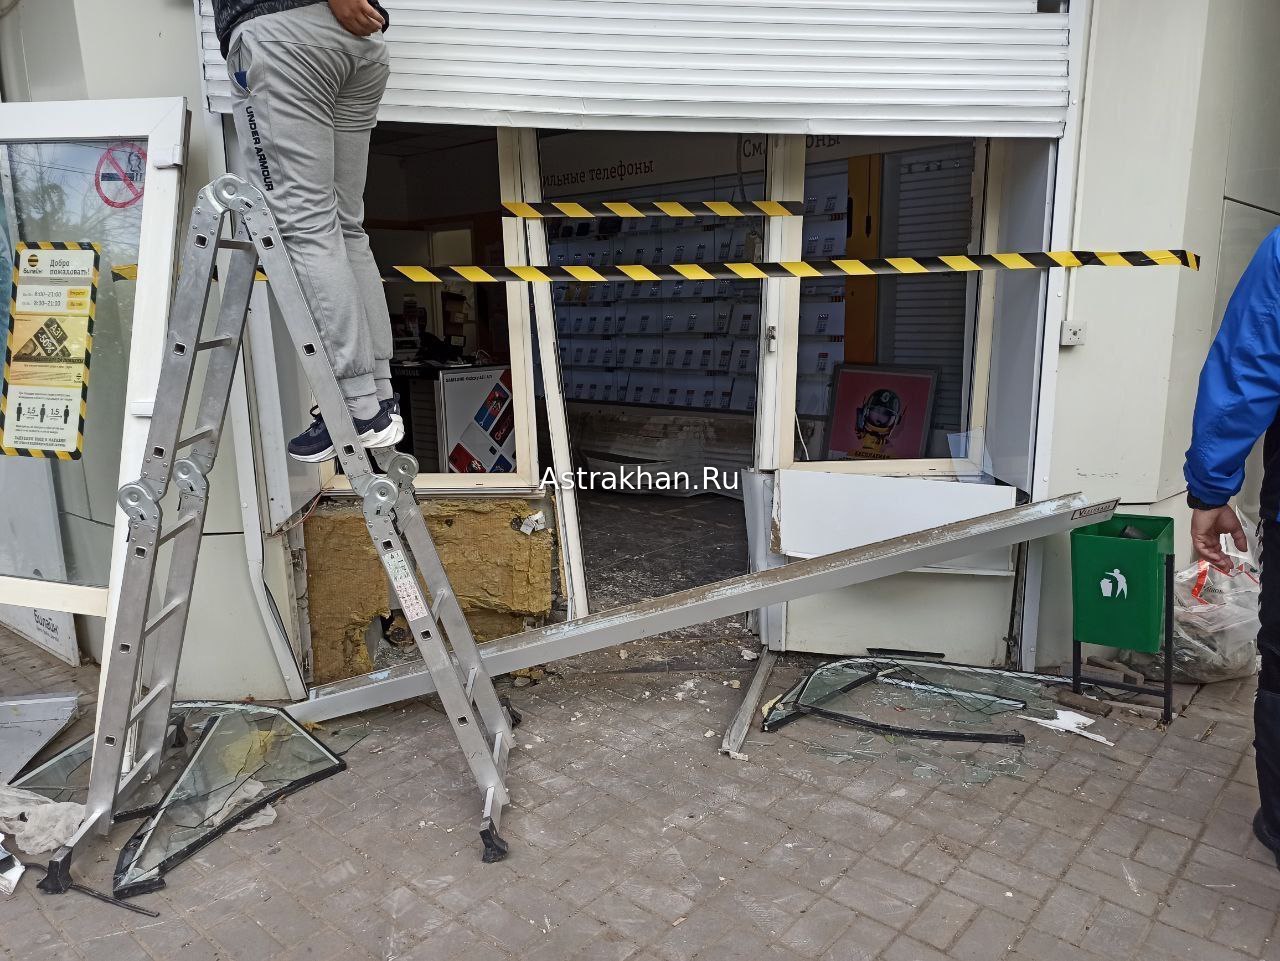 В Астрахани разгромили магазин «Билайн» на Савушкина